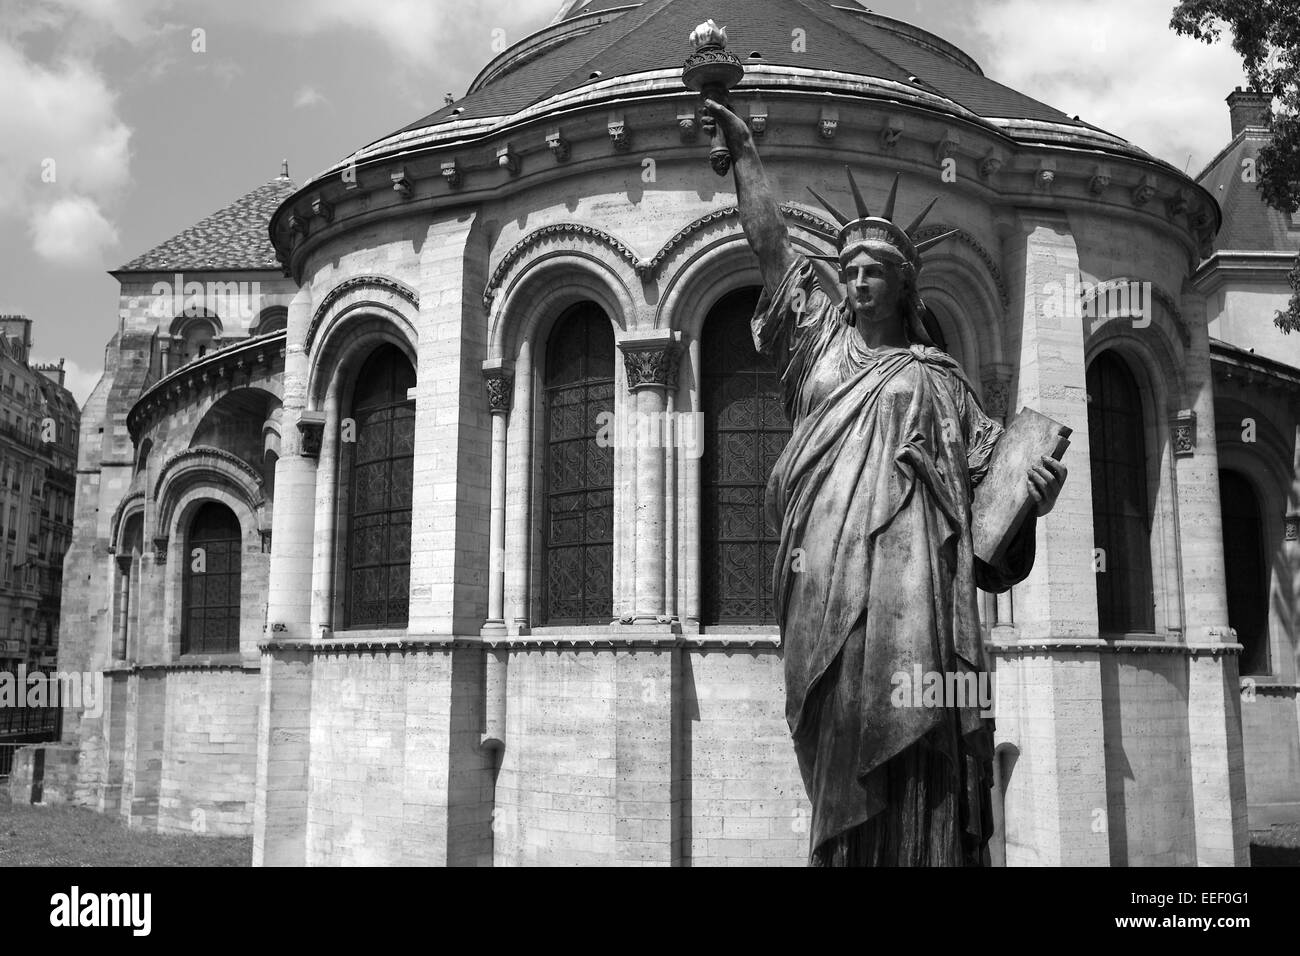 Réplique de la Statue de la liberté à l'extérieur Musée des Arts et Métiers, Paris, France Banque D'Images